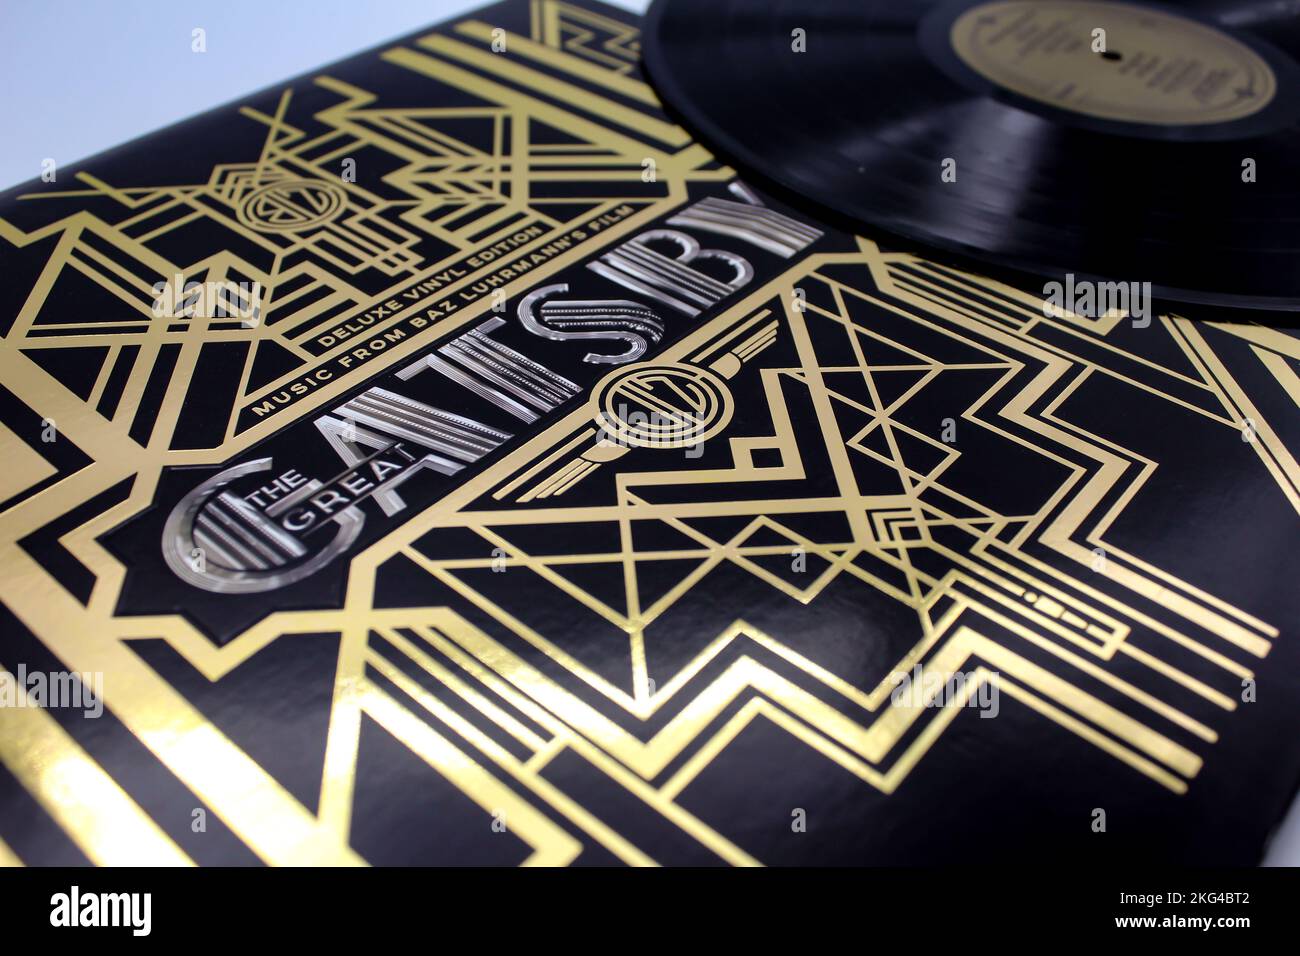 The Great Gatsby Soundtrack auf Vinyl LP-Schallplatte aus dem Film-Soundtrack. Jazzmusik. Der Film basiert auf dem Roman von F. Scott Fitzgerald. Stockfoto